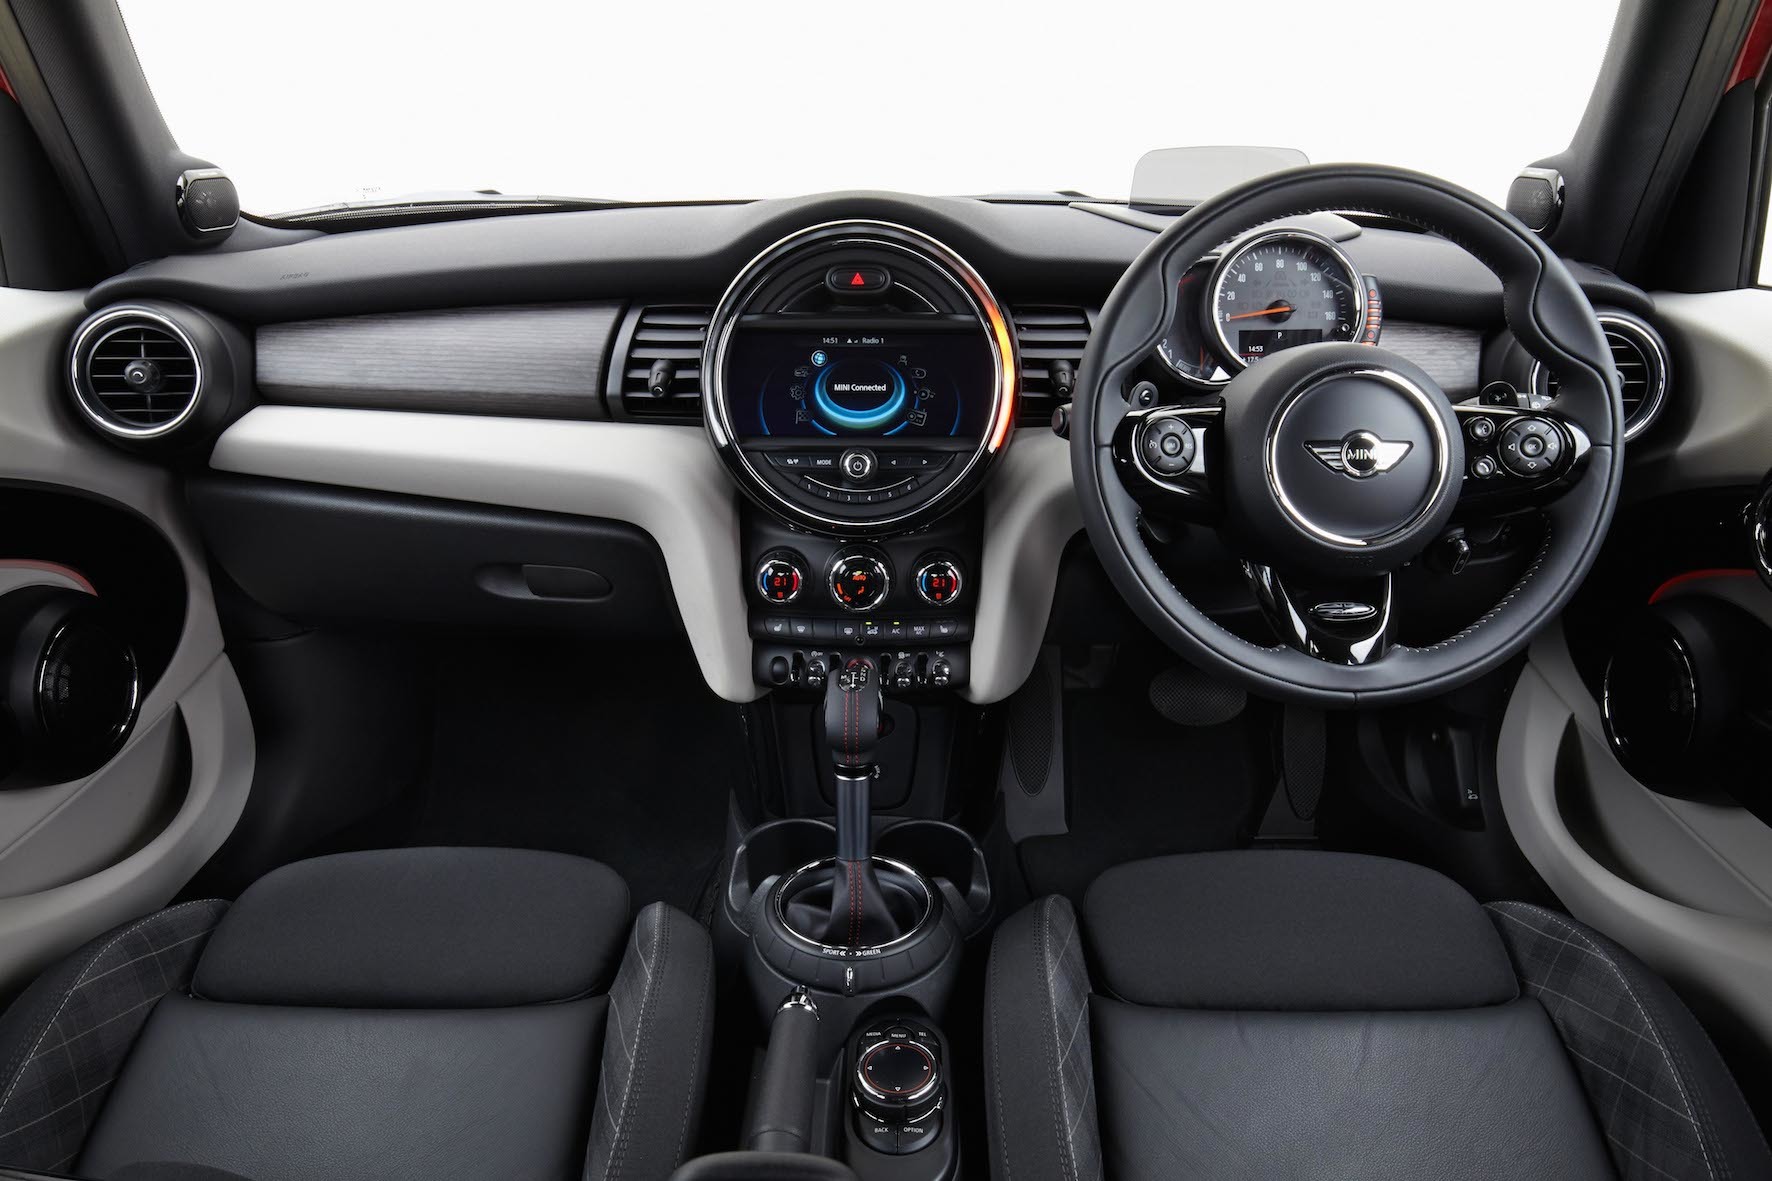 2014 Mini Cooper S 5-door Hatch